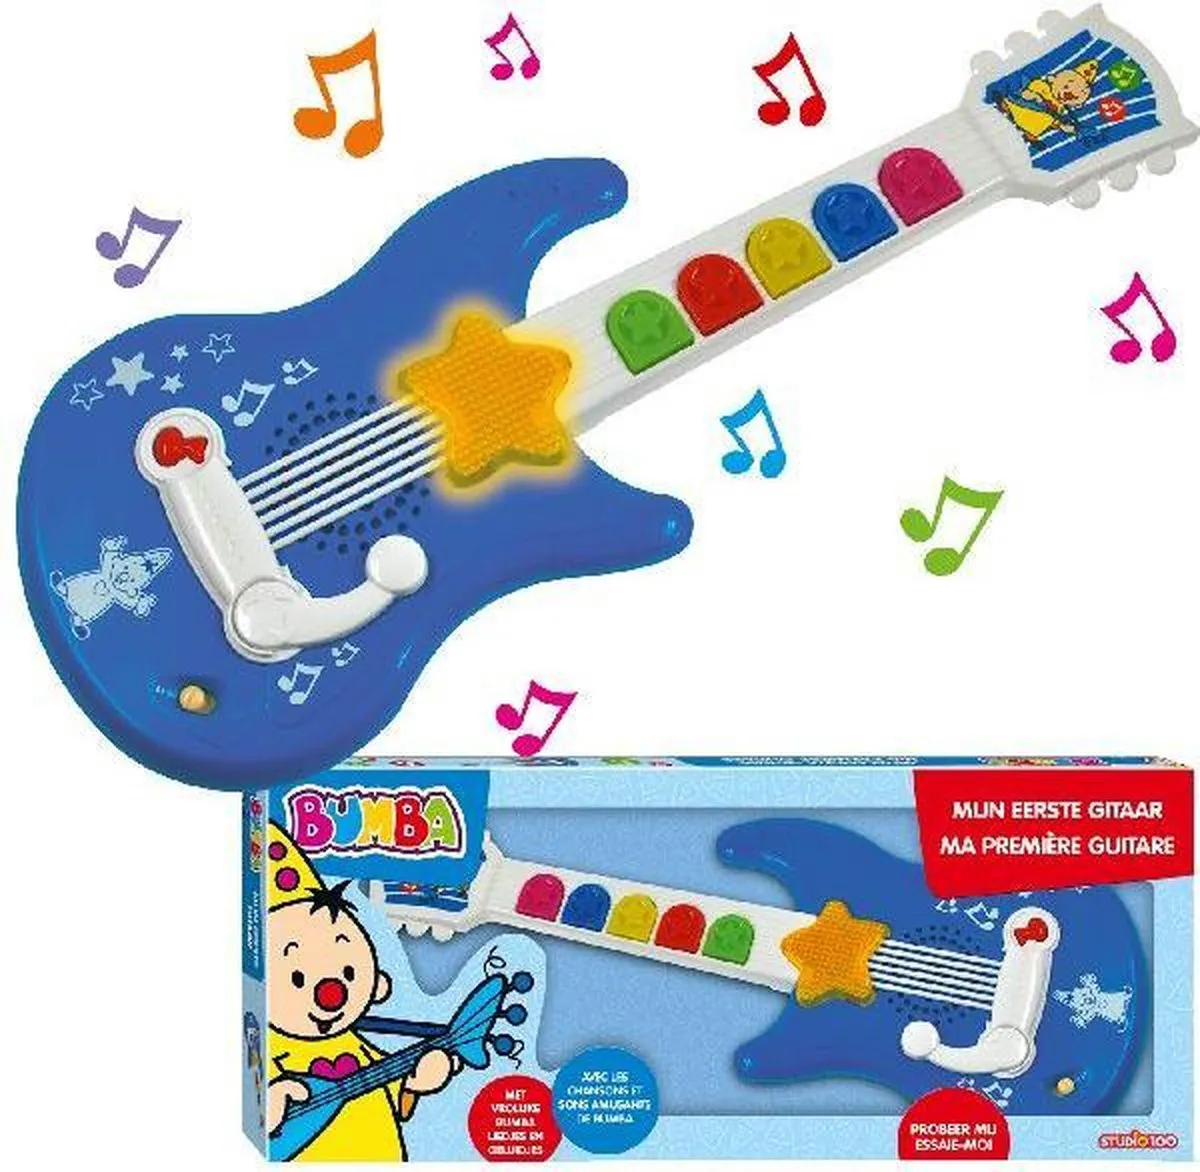 Bumba speelgoedinstrument - Mijn eerste gitaar - met Bumba liedjes speelgoed